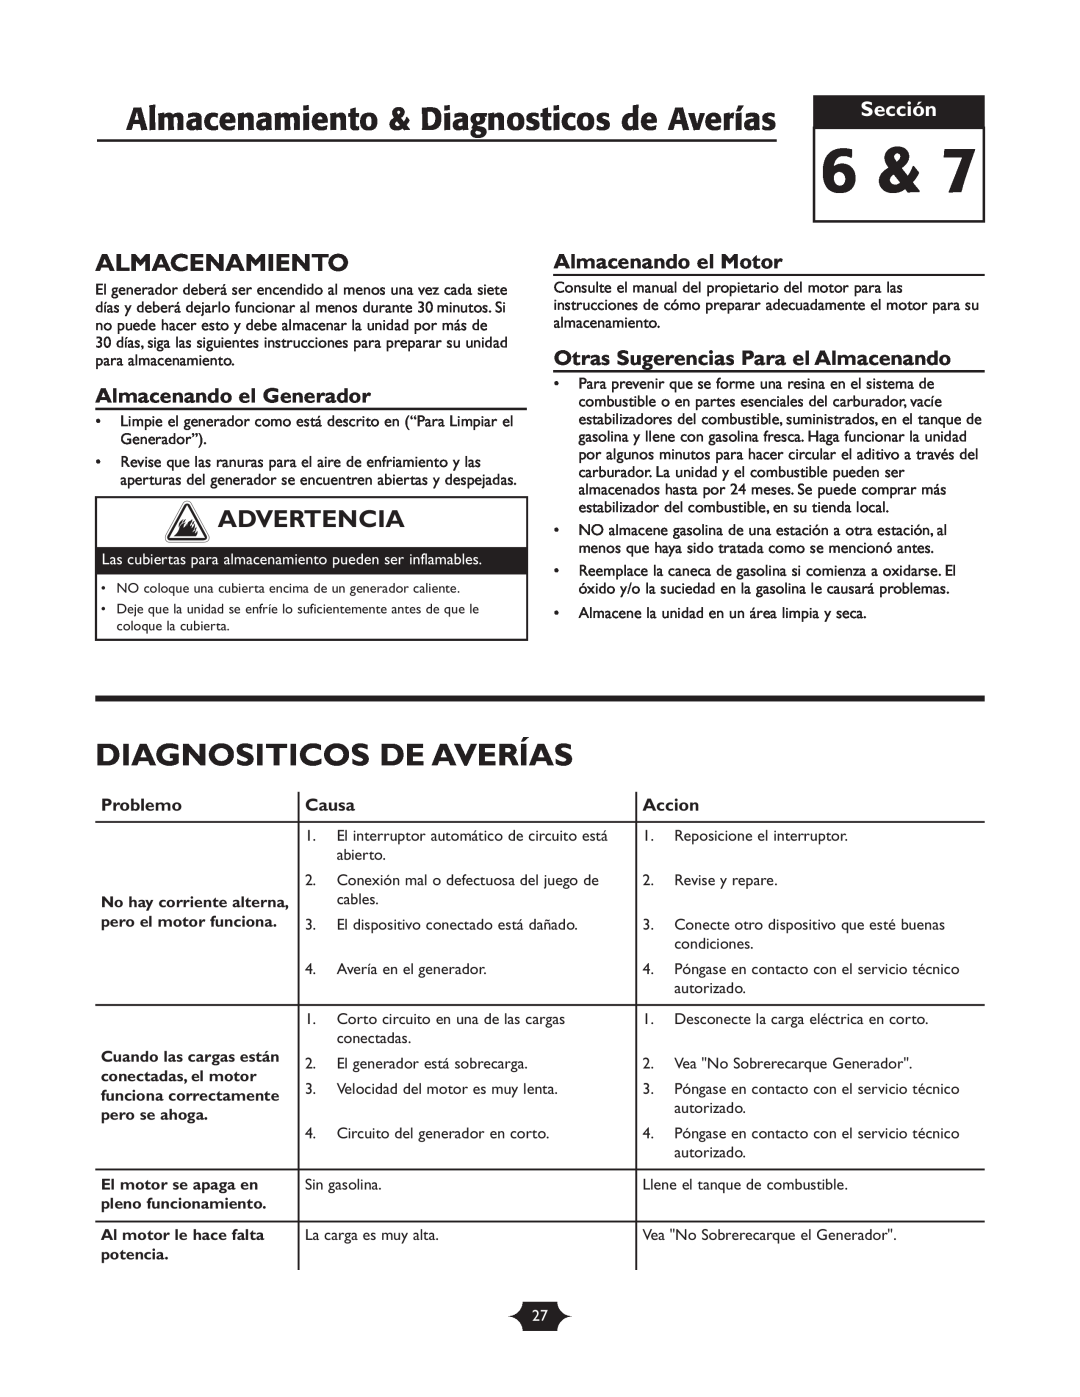 Troy-Bilt 1919 Almacenamiento & Diagnosticos de Averías, Diagnositicos De Averías, Almacenando el Generador, Problemo 